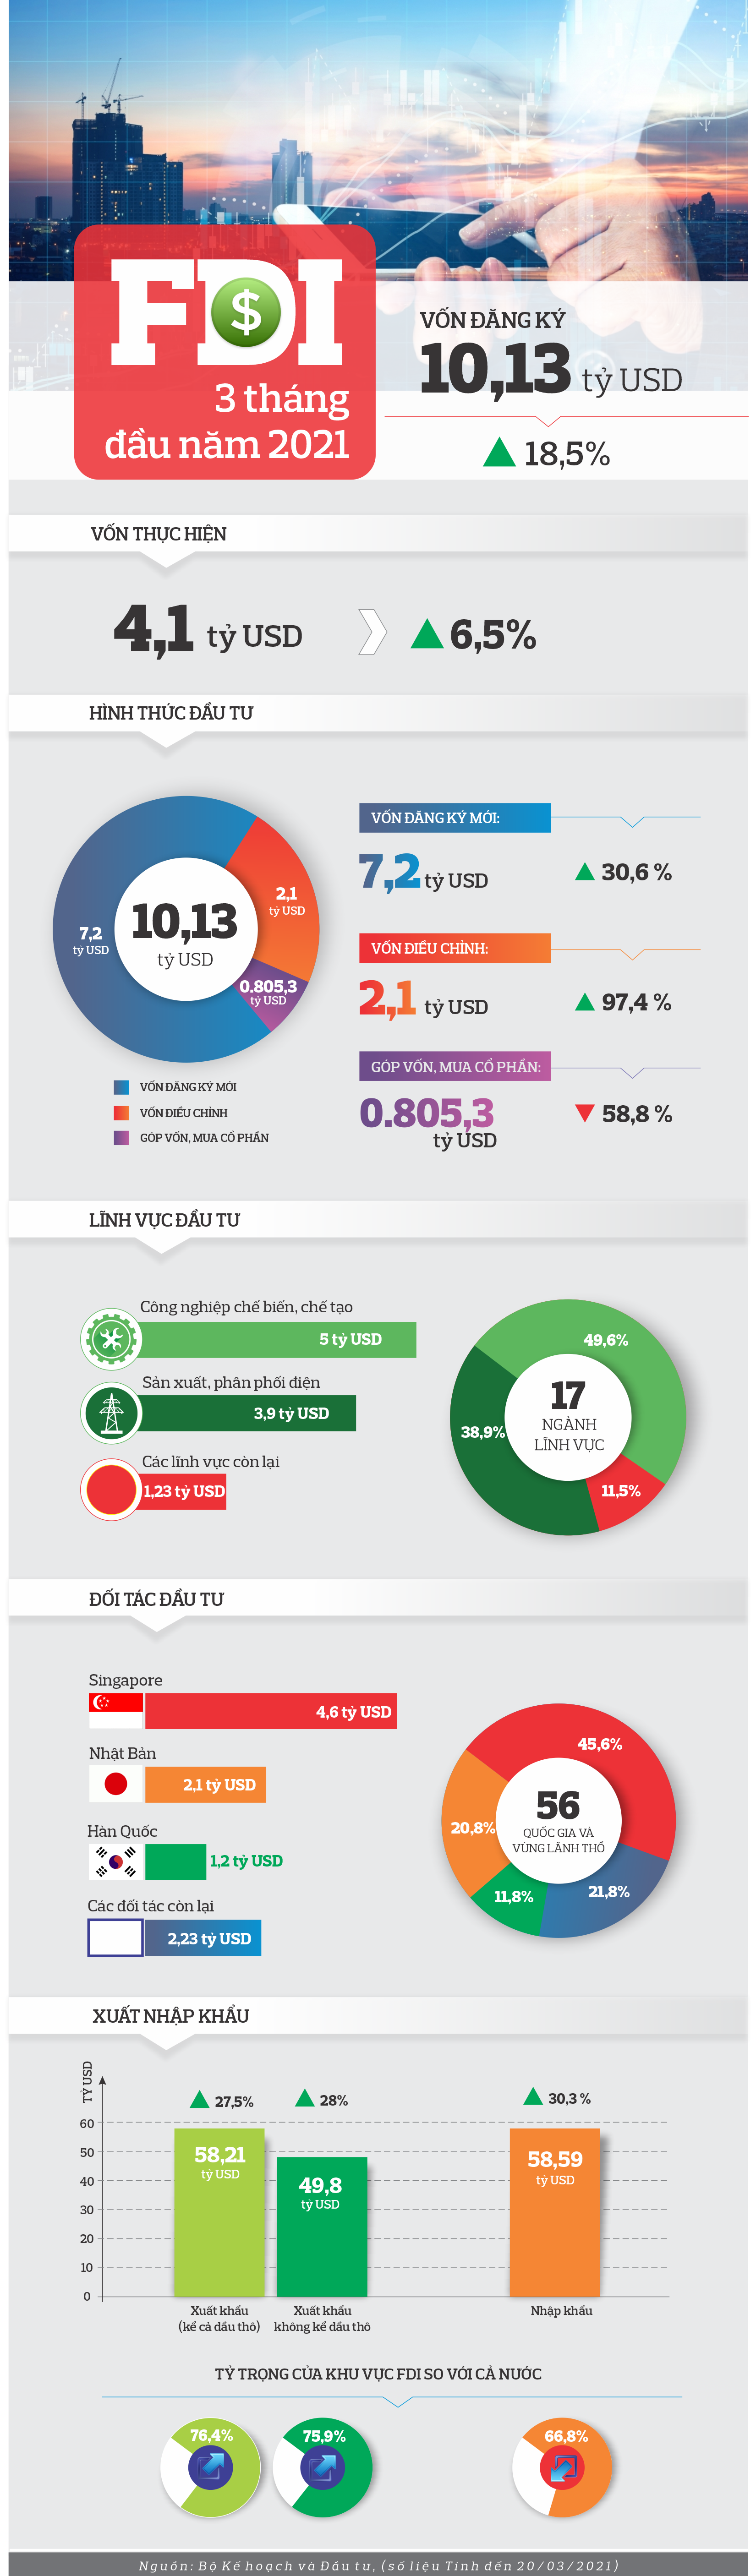 infographic fdi quy i2021